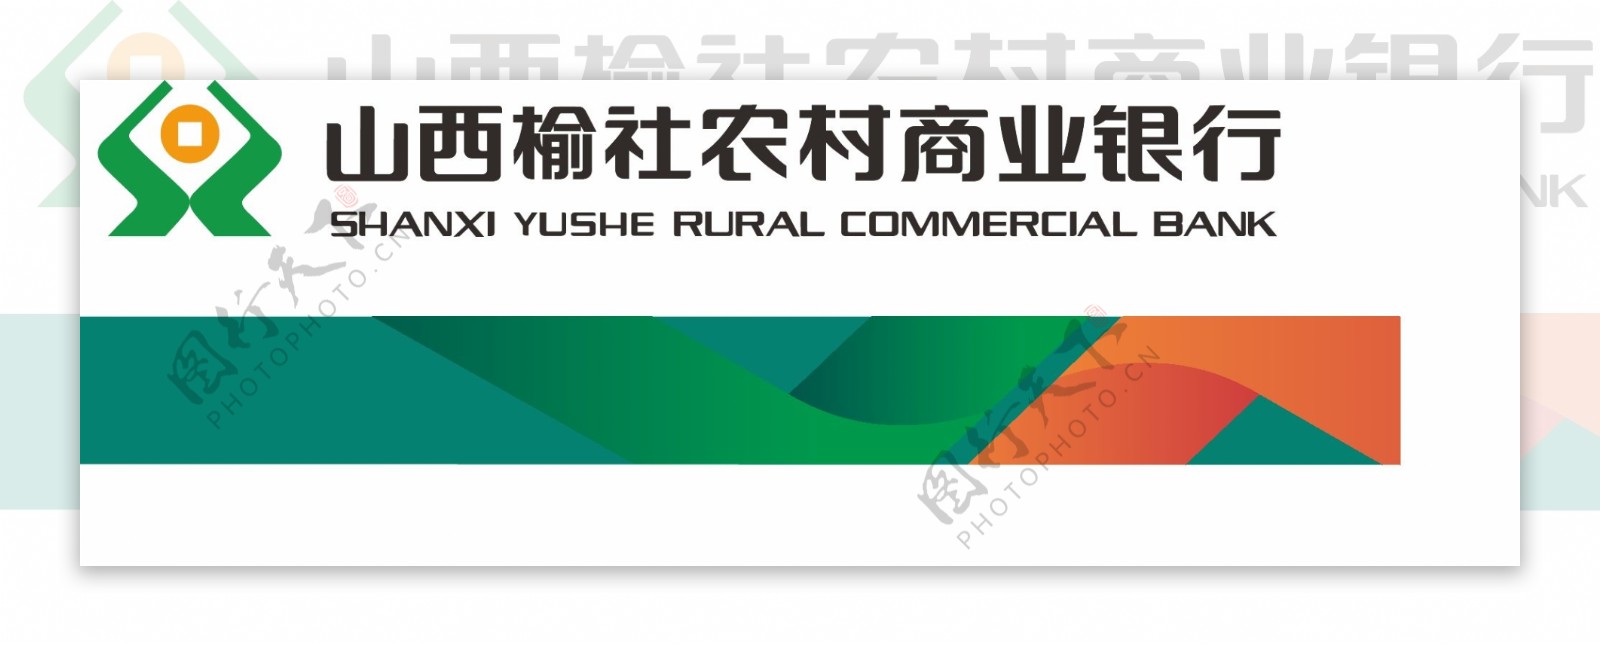 山西榆社农村商业银行logo